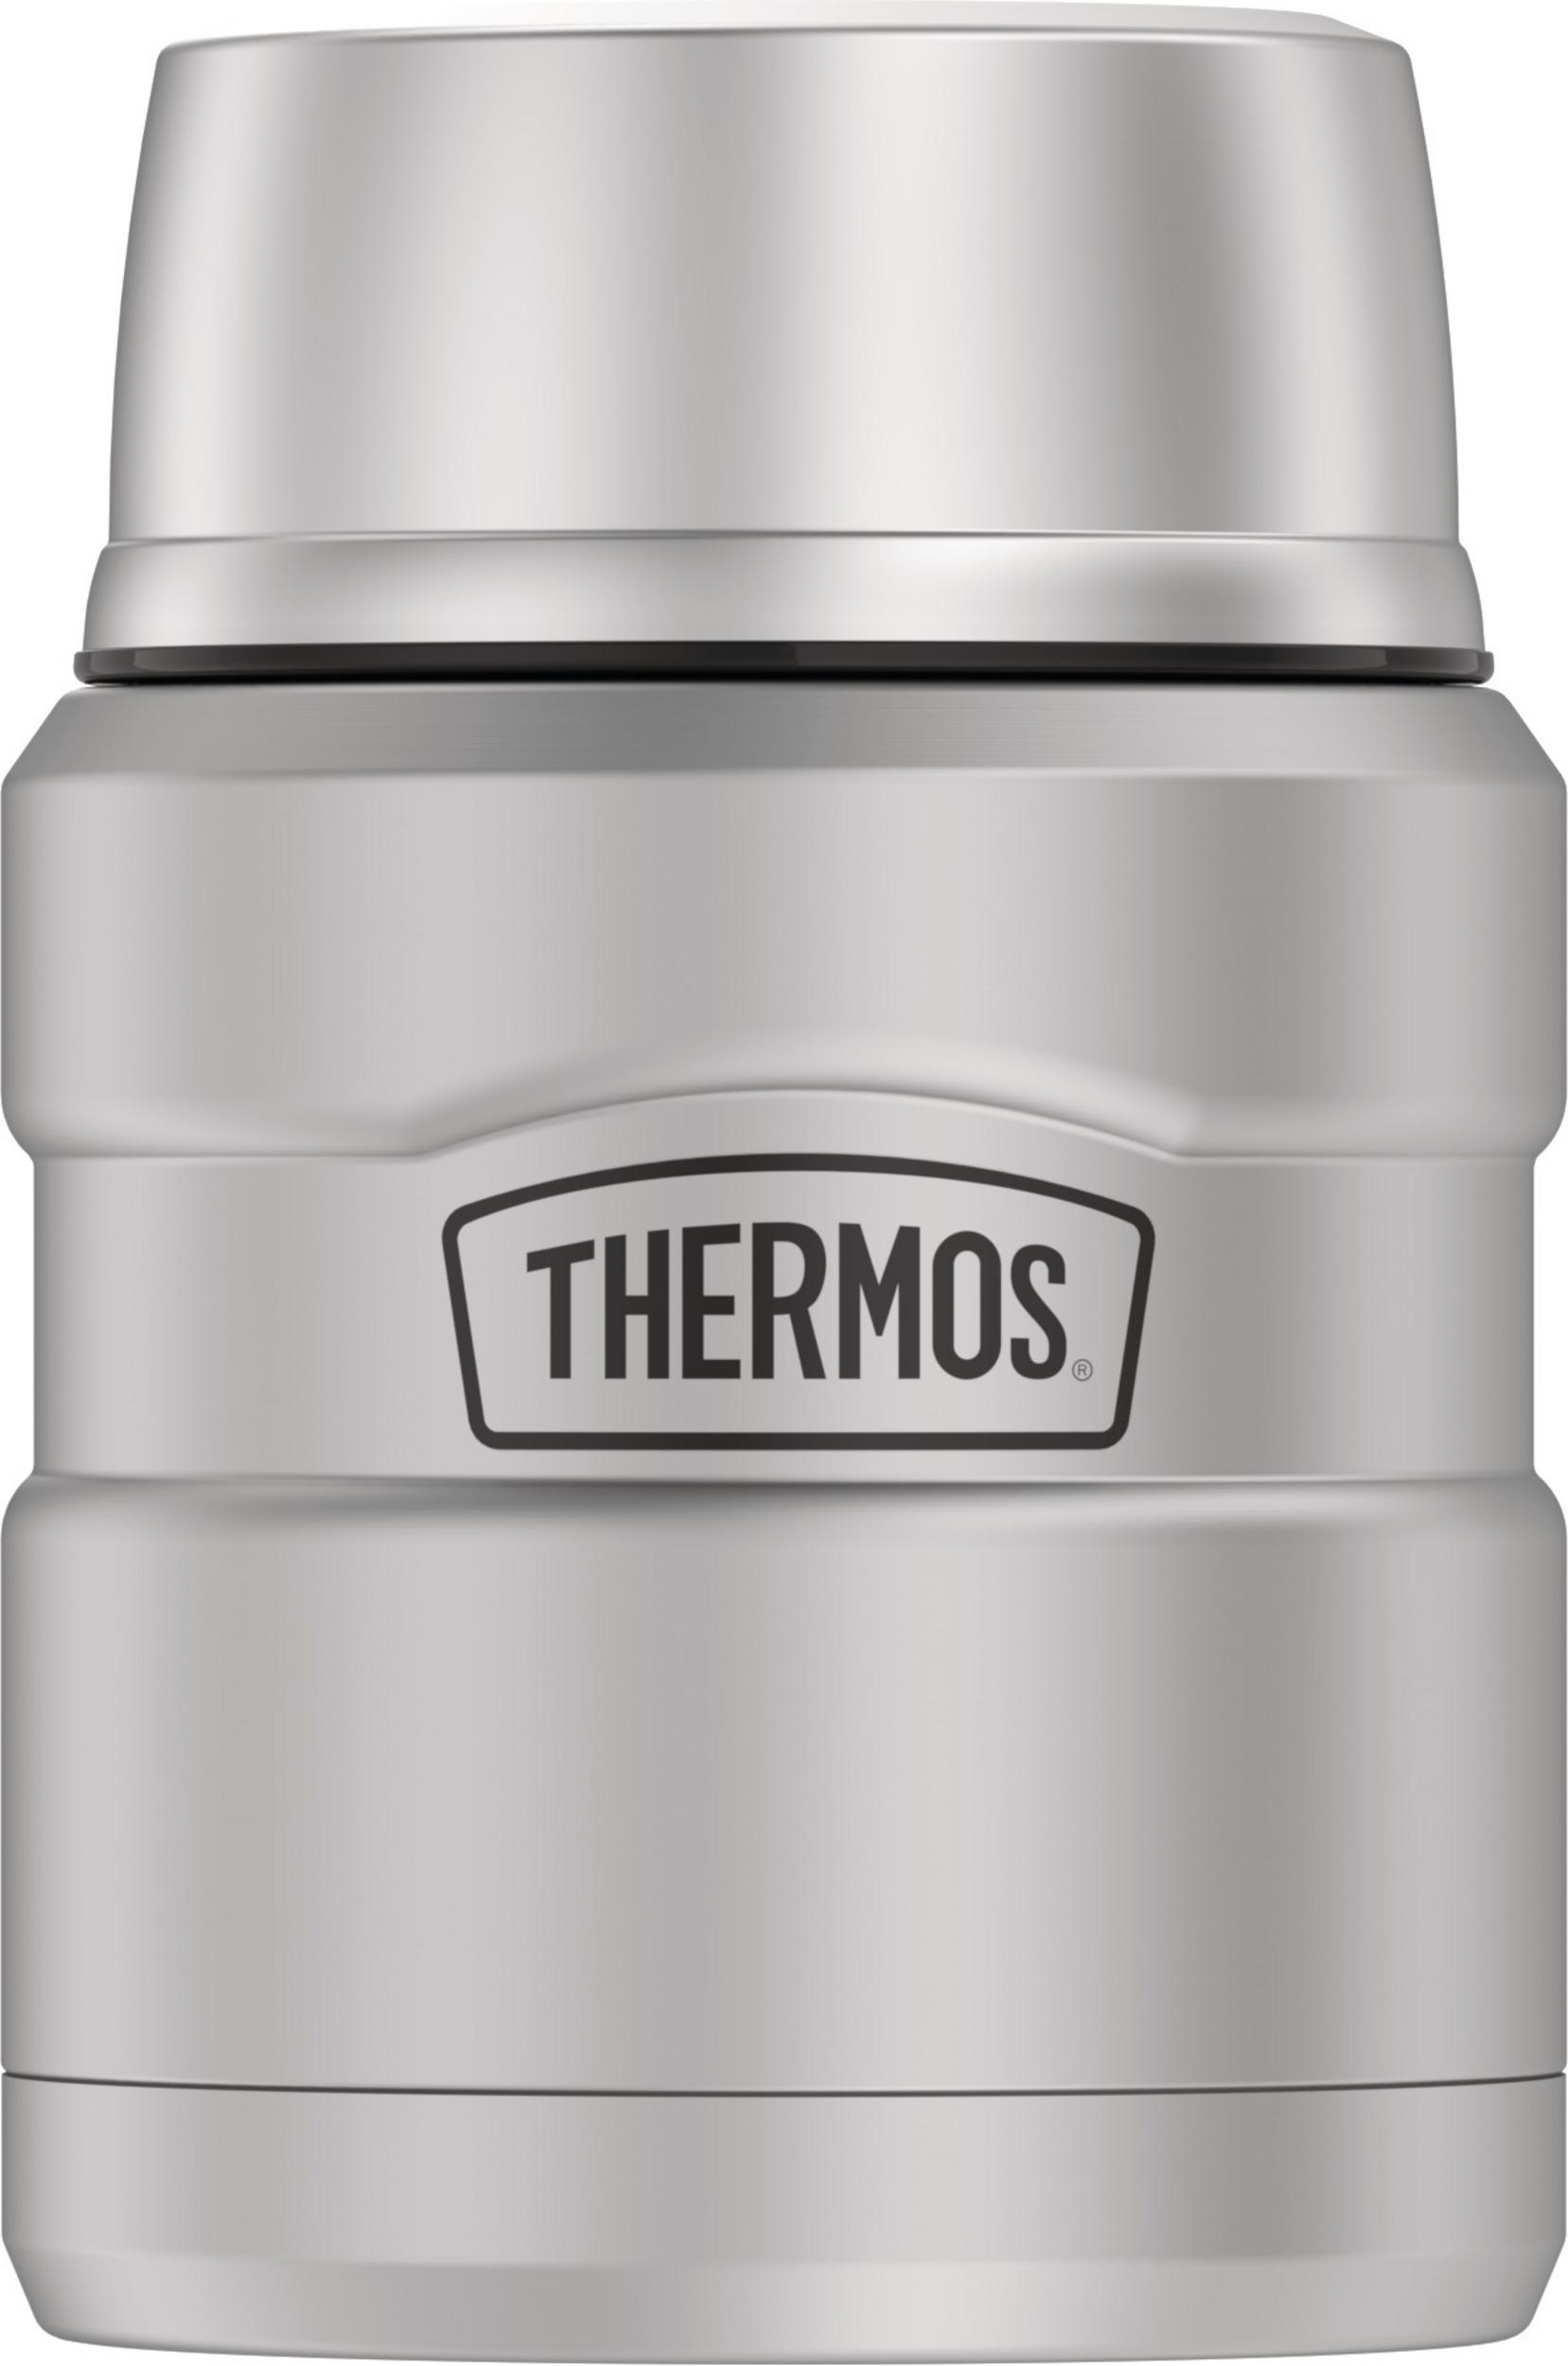 Contenant à aliments en acier inoxydable avec cuillère pliante - 470 ml Inox   - Thermos - Boîte à repas - SK3000MSTRI4